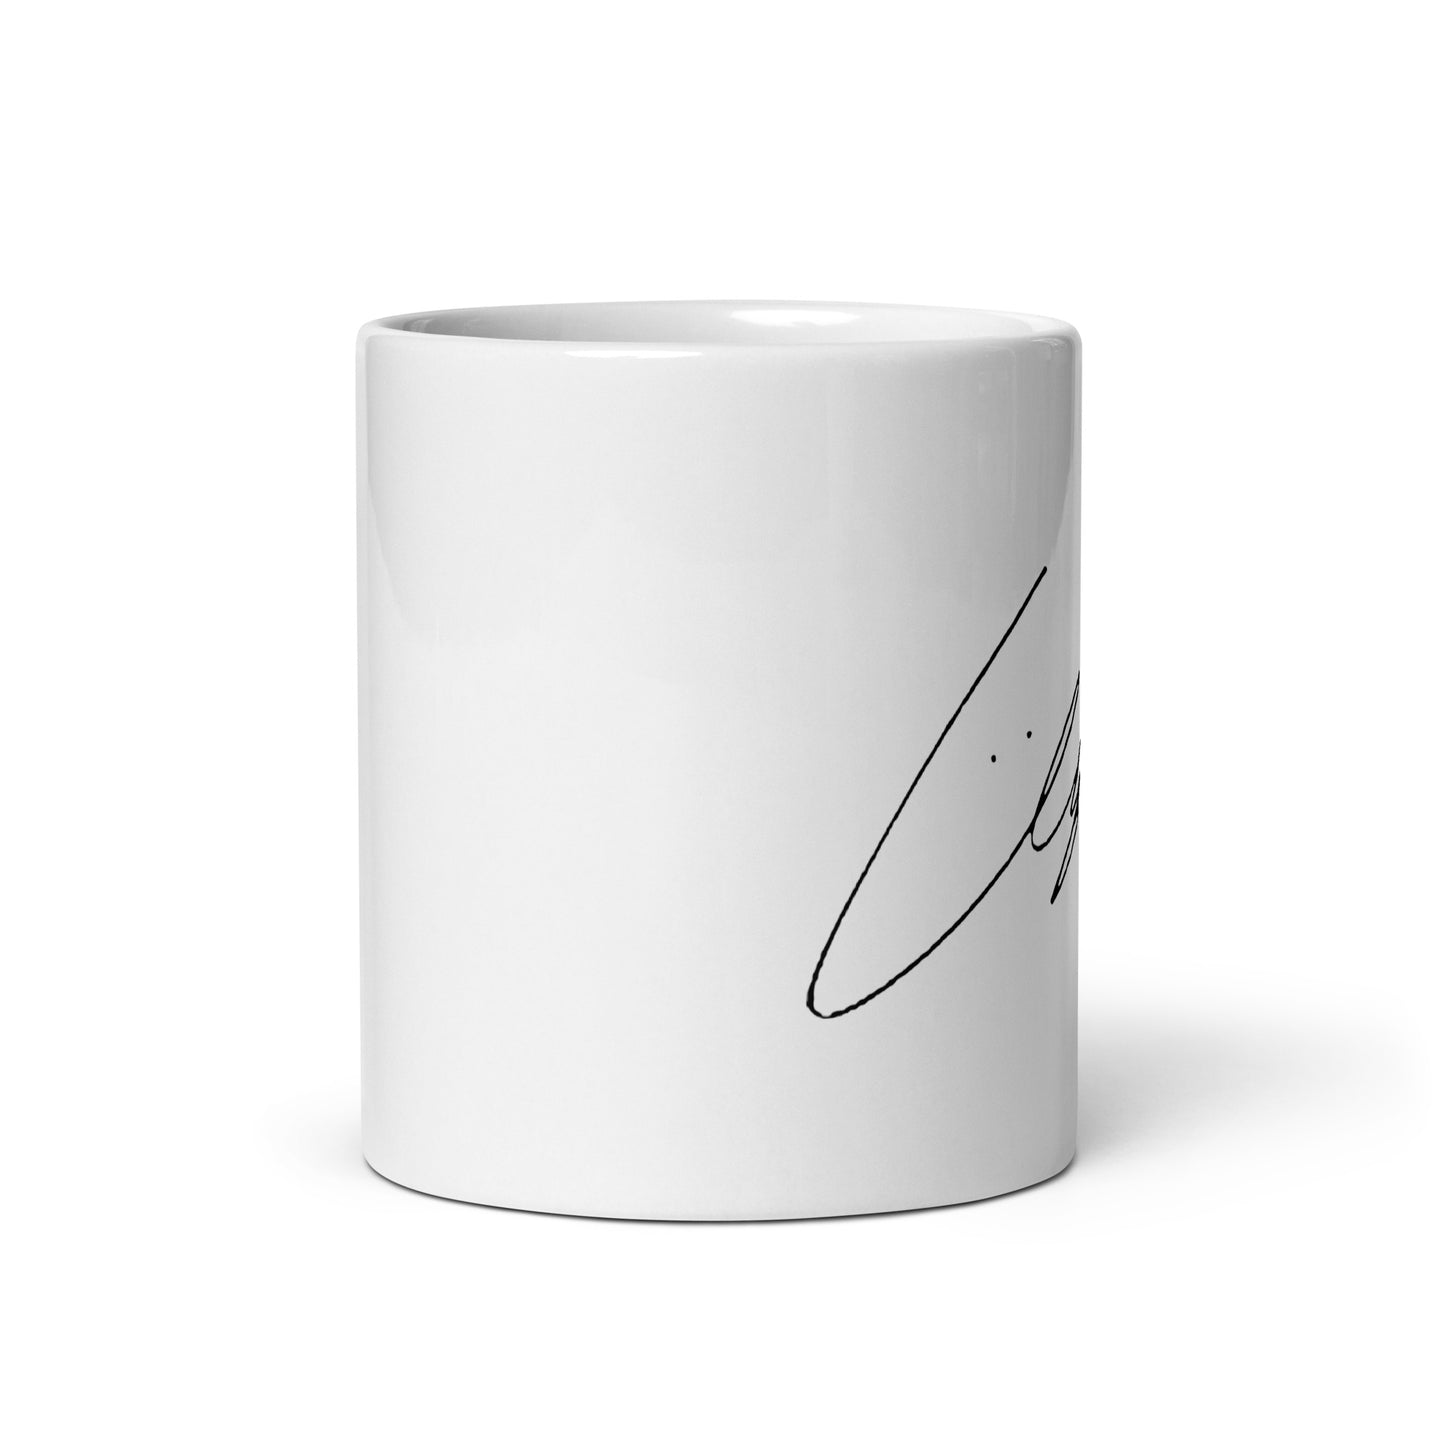 GOT7 Yugyeom, Kim Yu-gyeom Signature Ceramic Mug